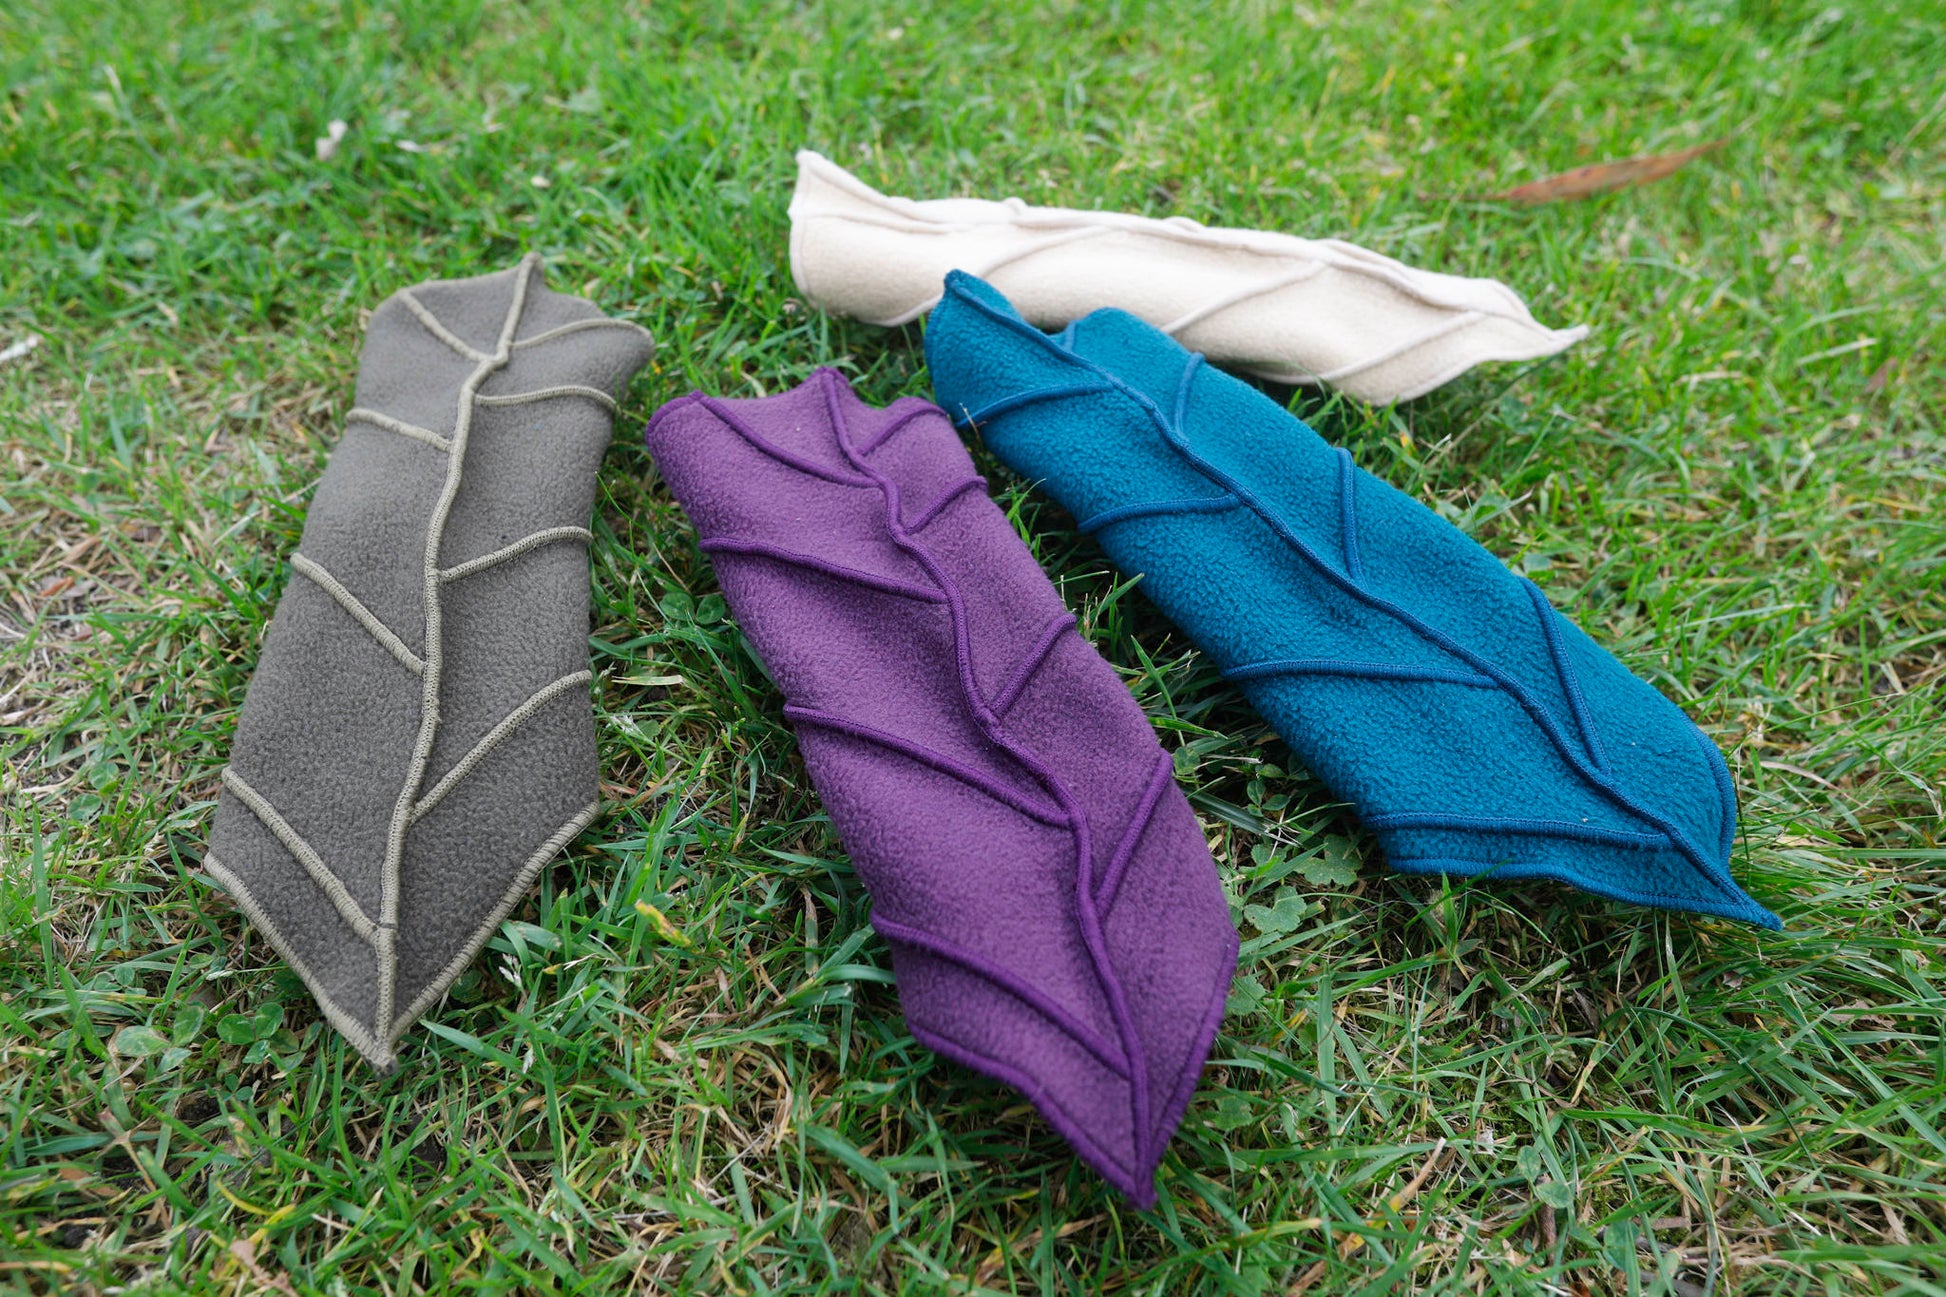 Fleecy Leaf cuffs - Pair of Arm Warmers - Arm Cuffs - Zelda Cosplay - Gauntlets - Bracers